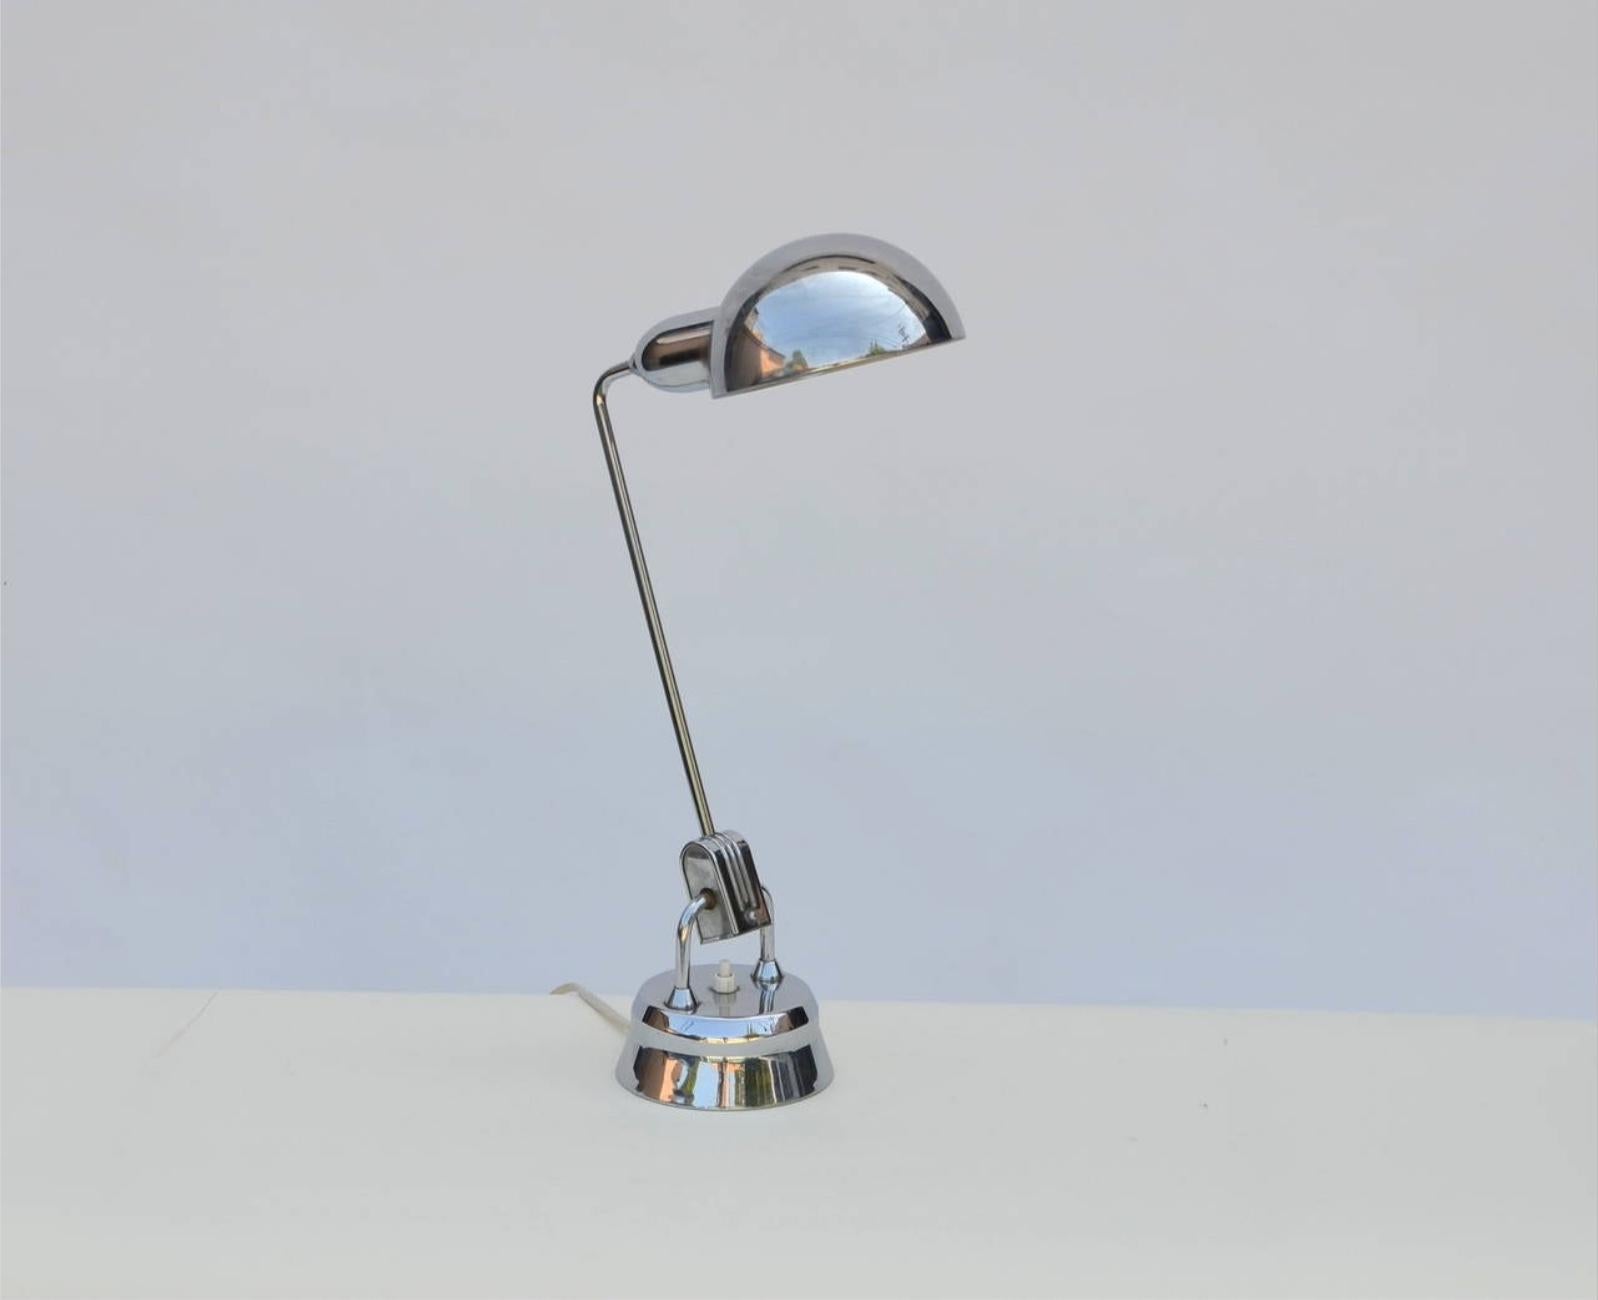 Lampe originale Jumo 600 chromée sélectionnée par Charlotte Perriand. Cette lampe a été conçue par Yves JUjeau, Pierre et André MOunique dans les années 1940 et sélectionnée par Charlotte Perriand pour certains de ses projets.